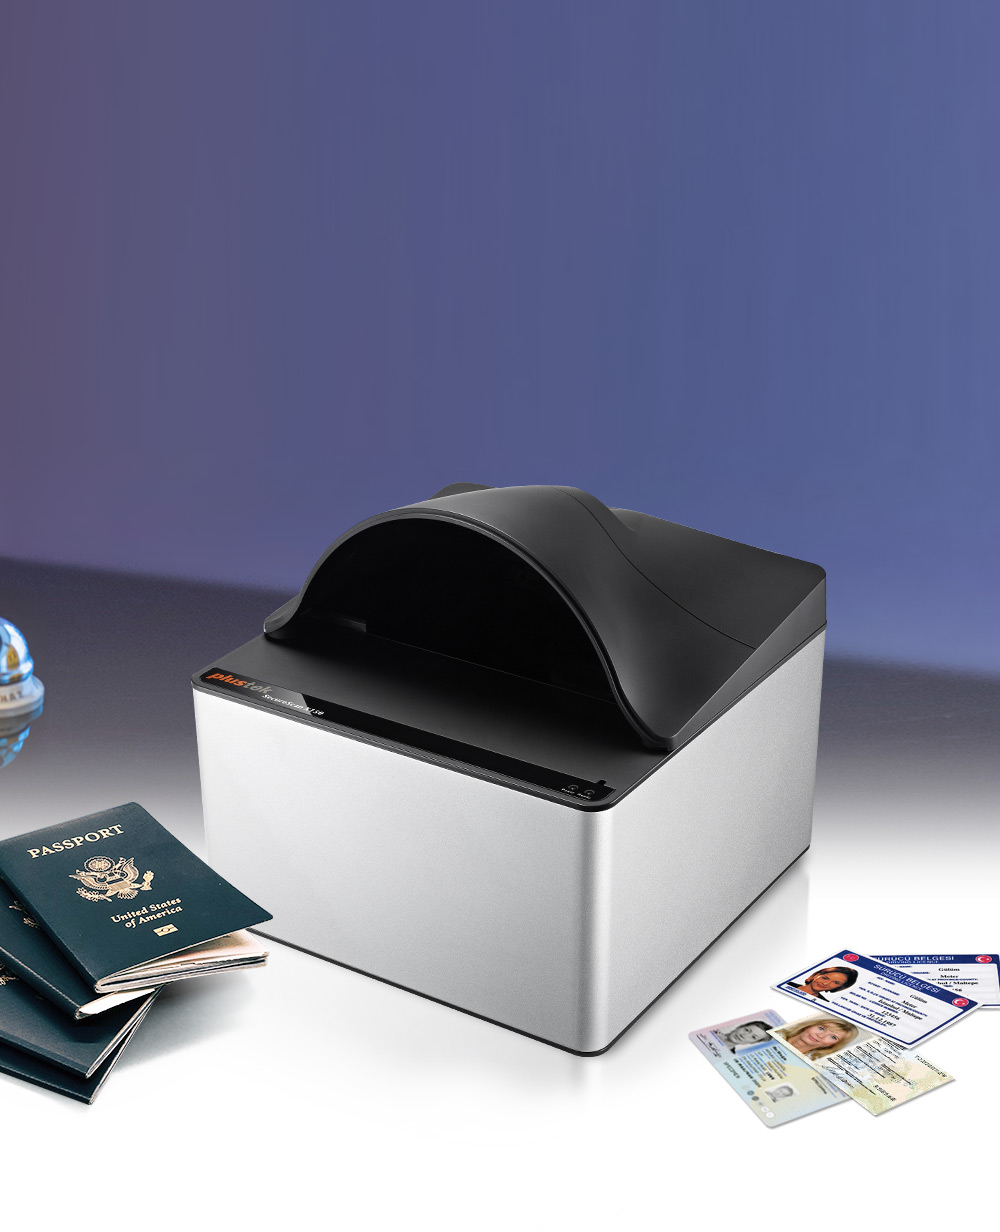 证件及护照读取器